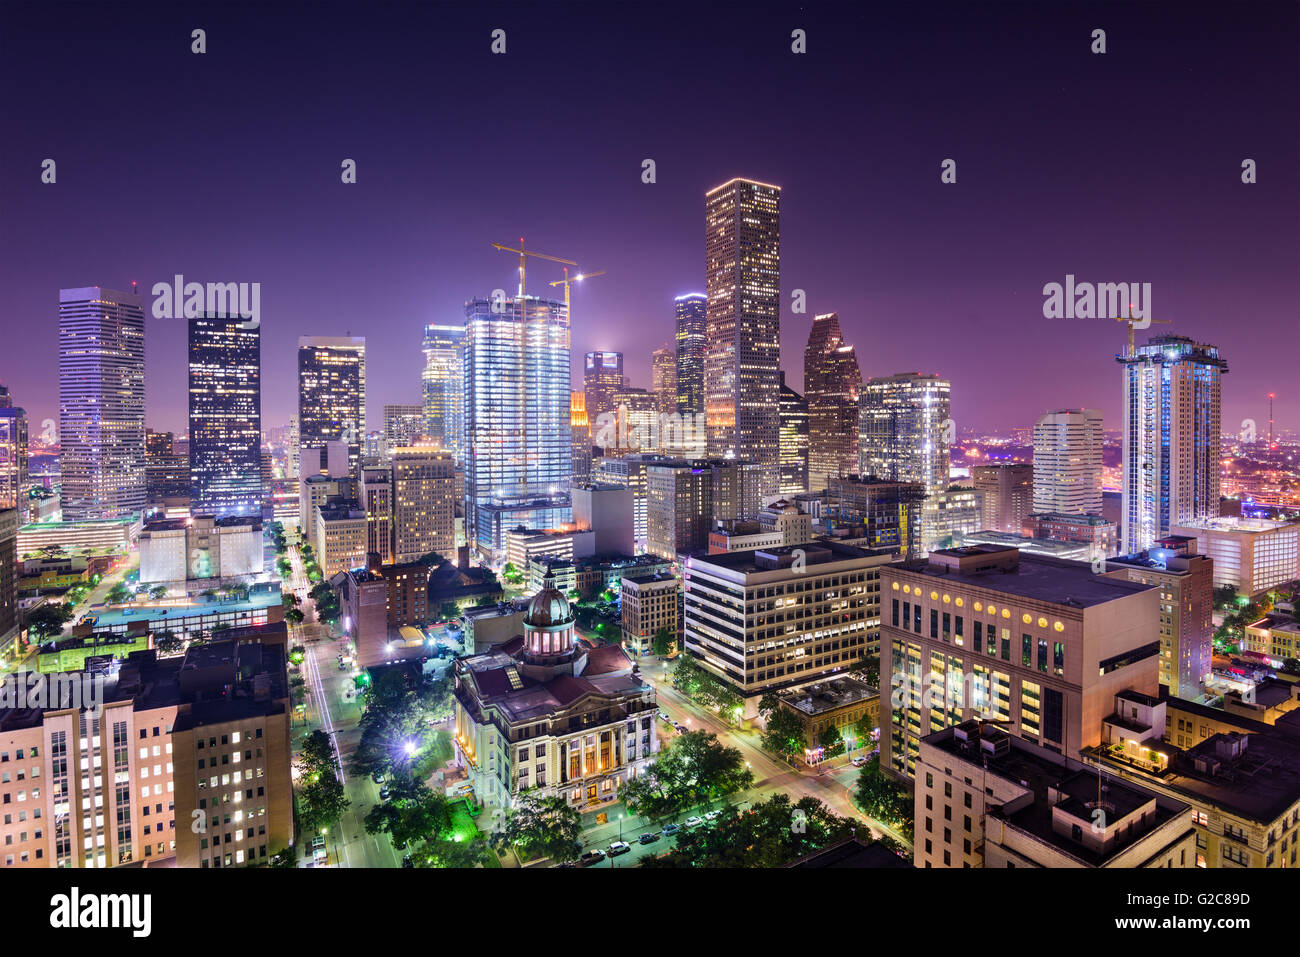 Houston, Texas, USA downtown city skyline. Stock Photo